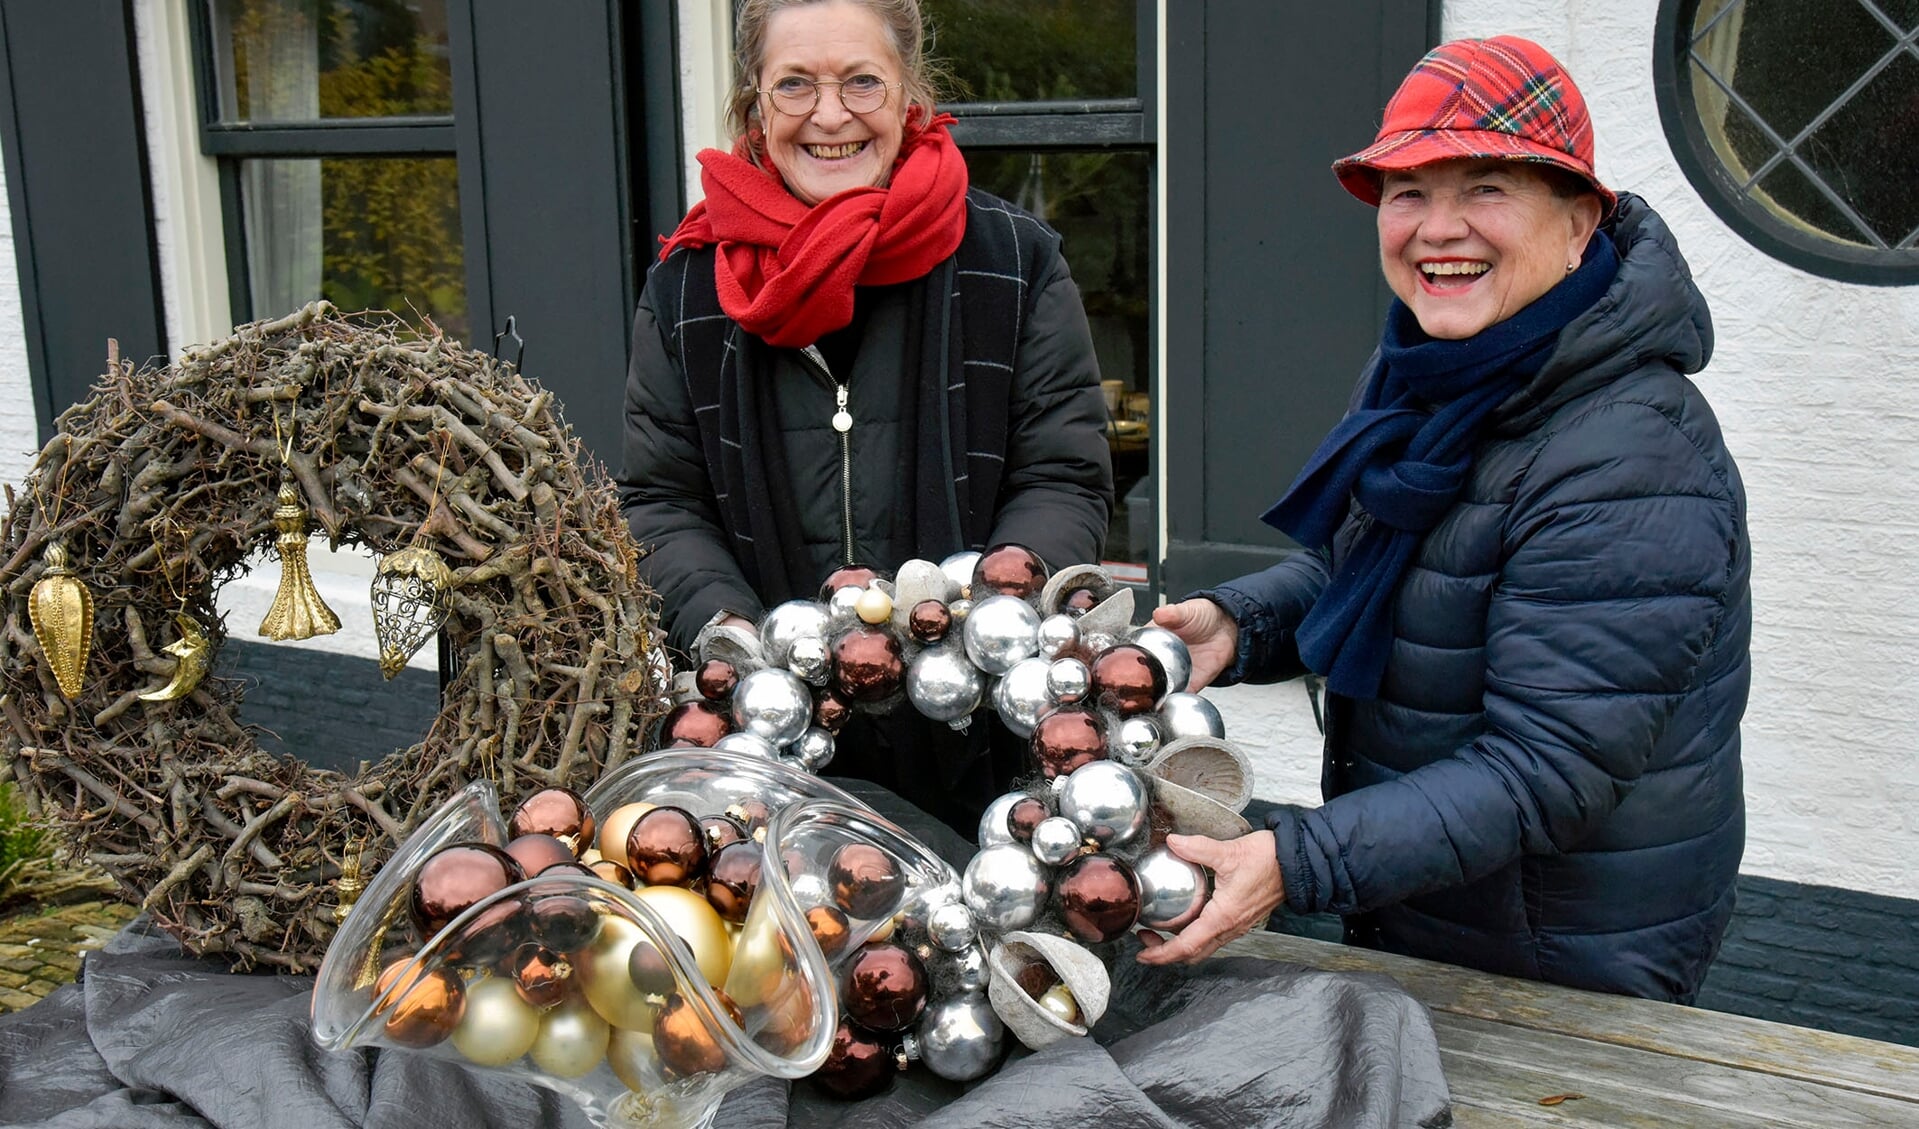 Els van Petegem en Jacqueline Kote organiseren een wintermarkt in kerstsfeer.